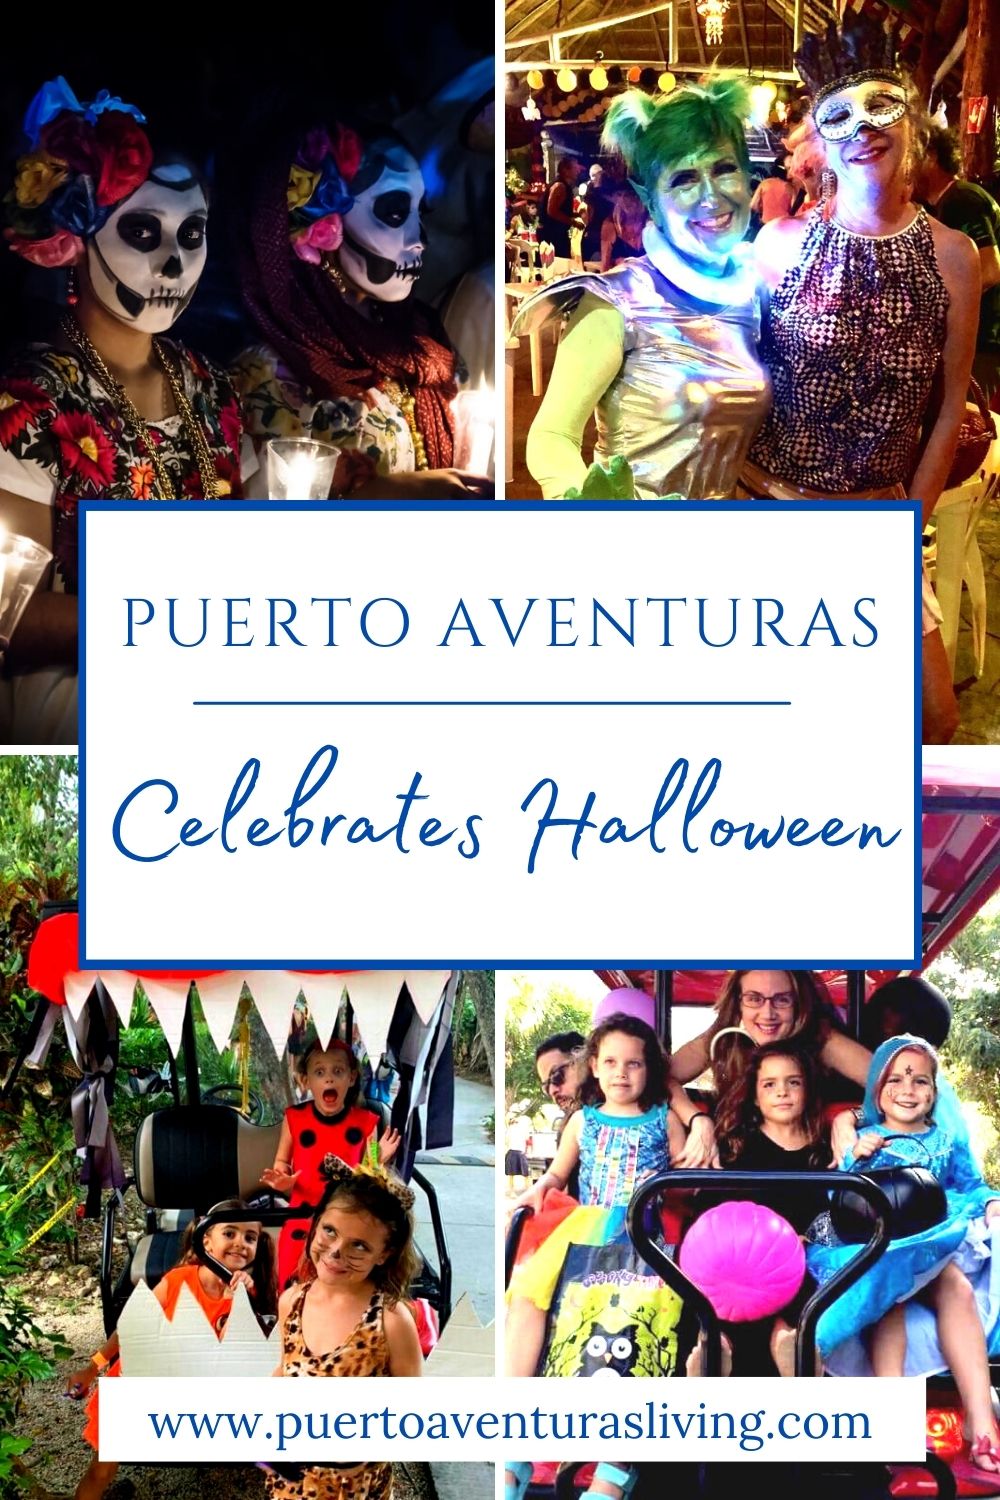 Halloween being celebrated in Puerto Aventuras